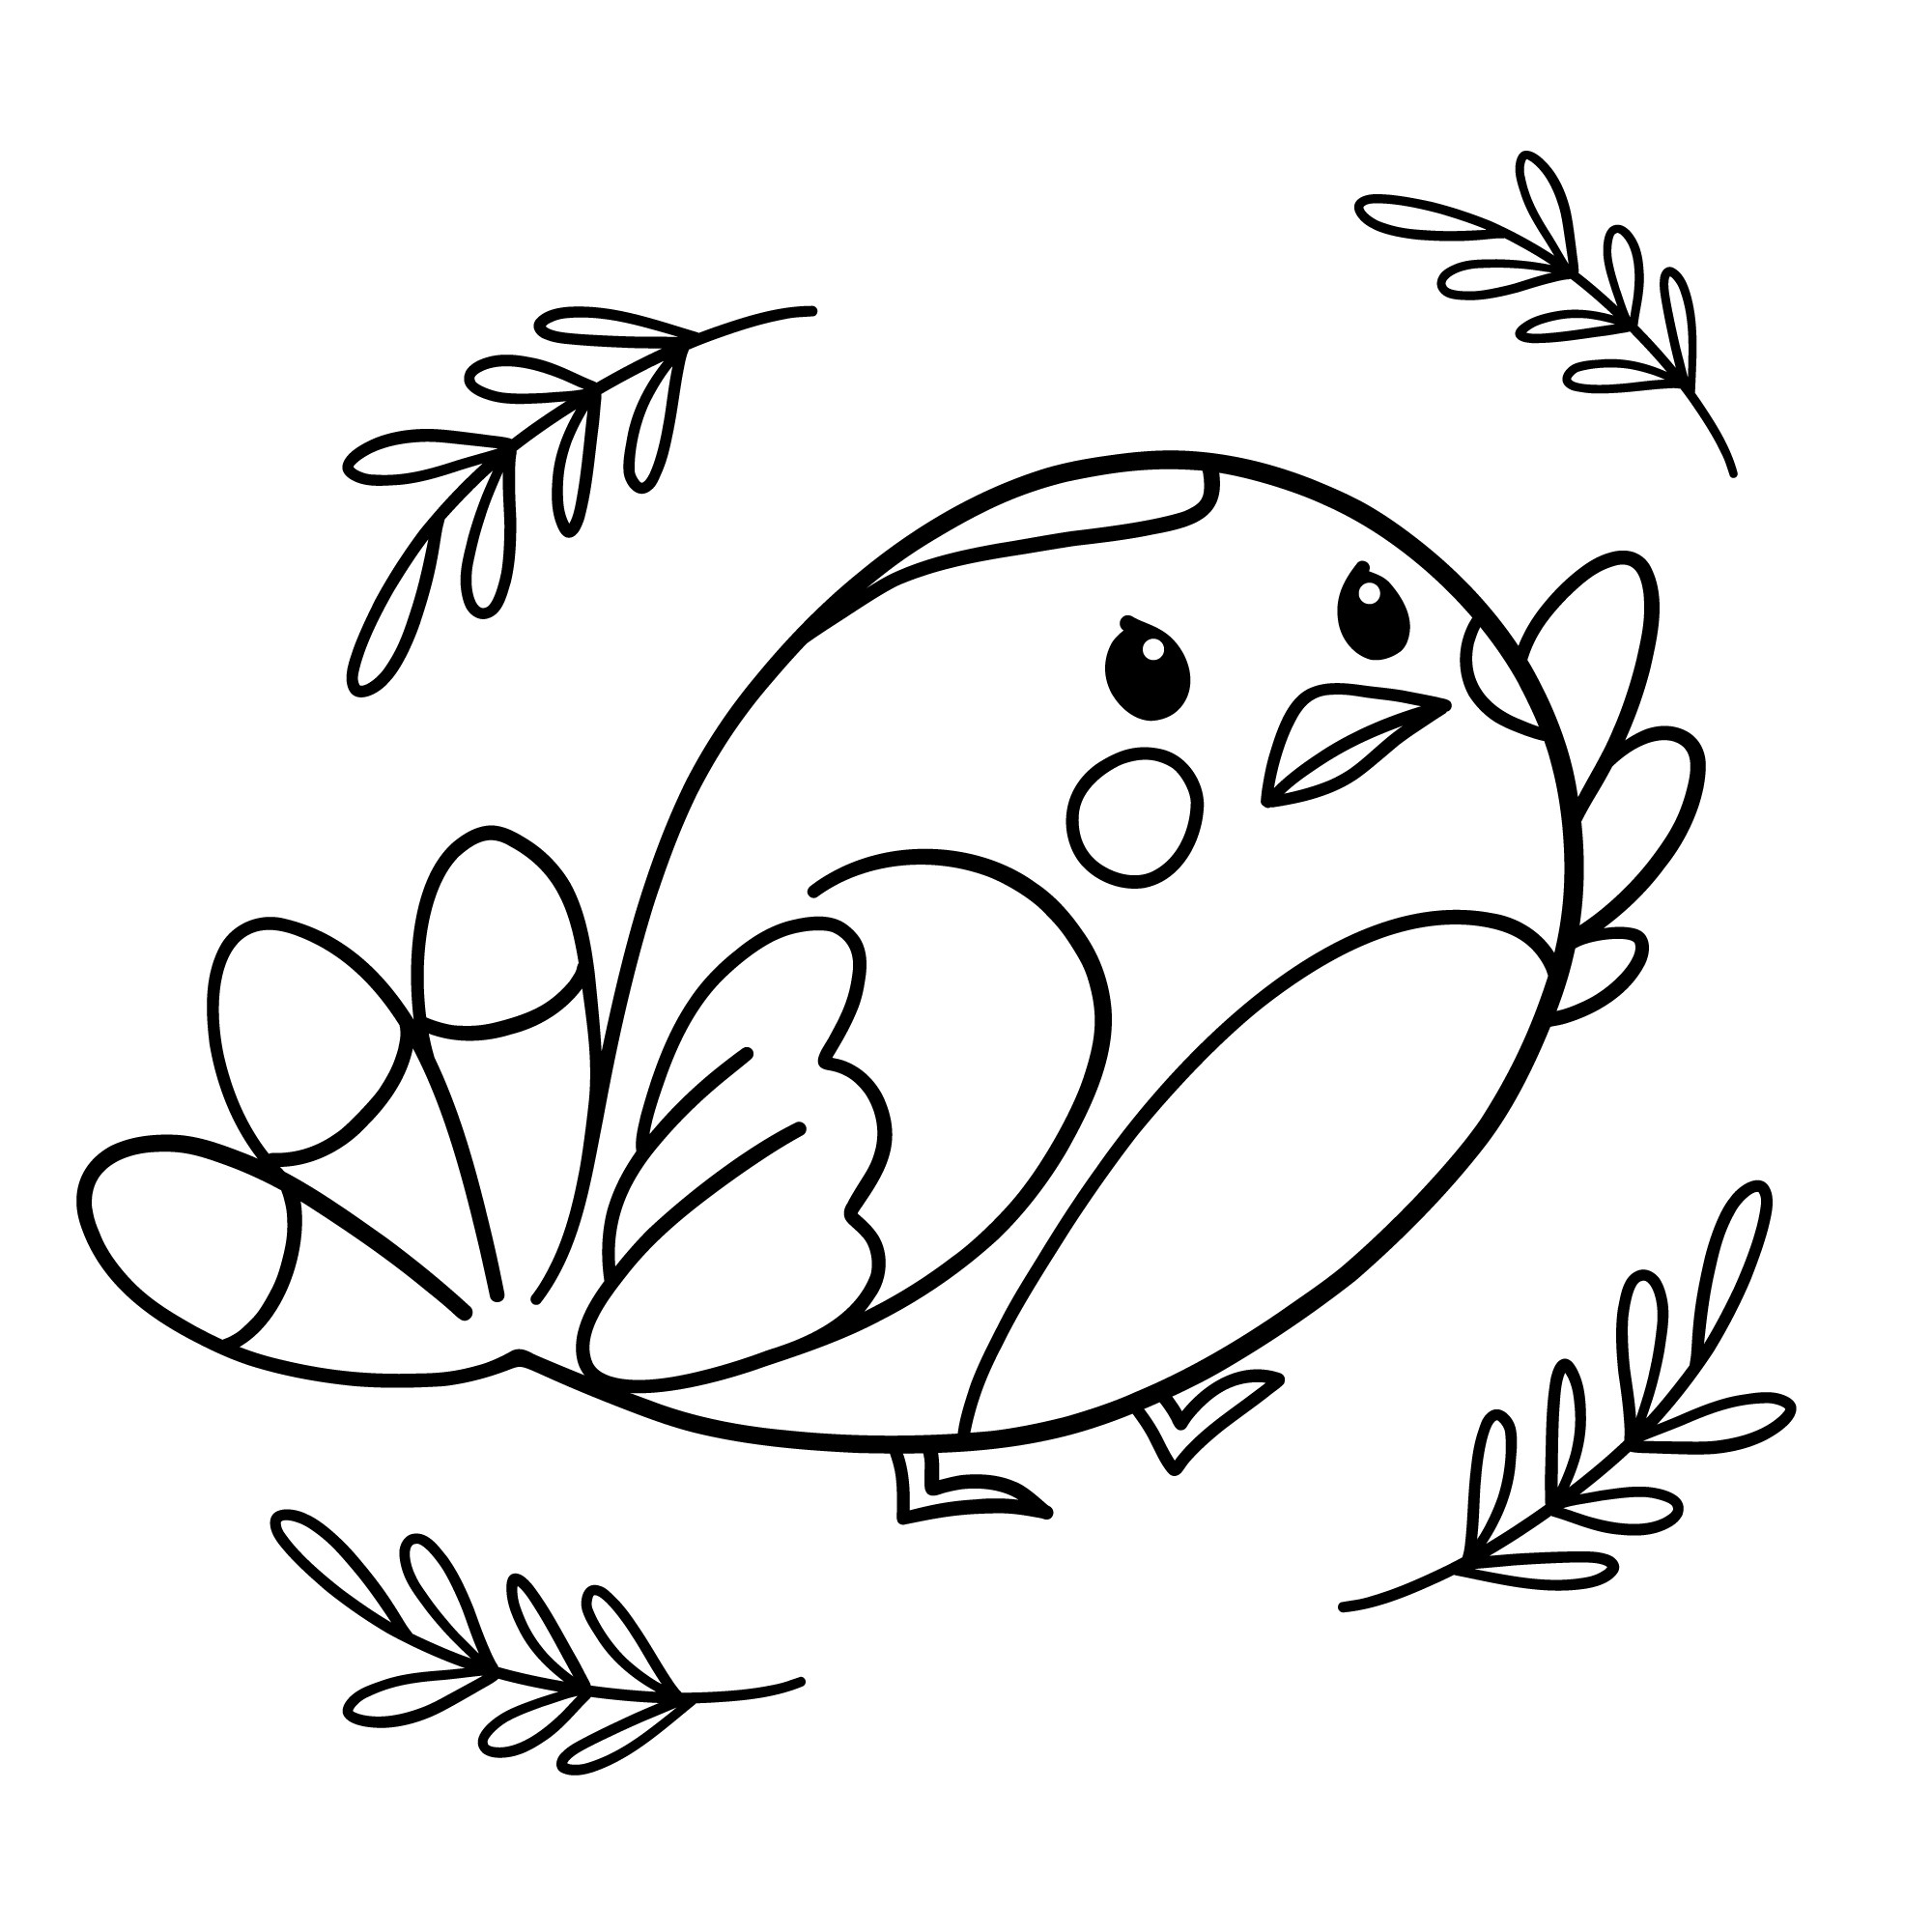 Раскраска для детей: мультяшная птичка с веточками вокруг